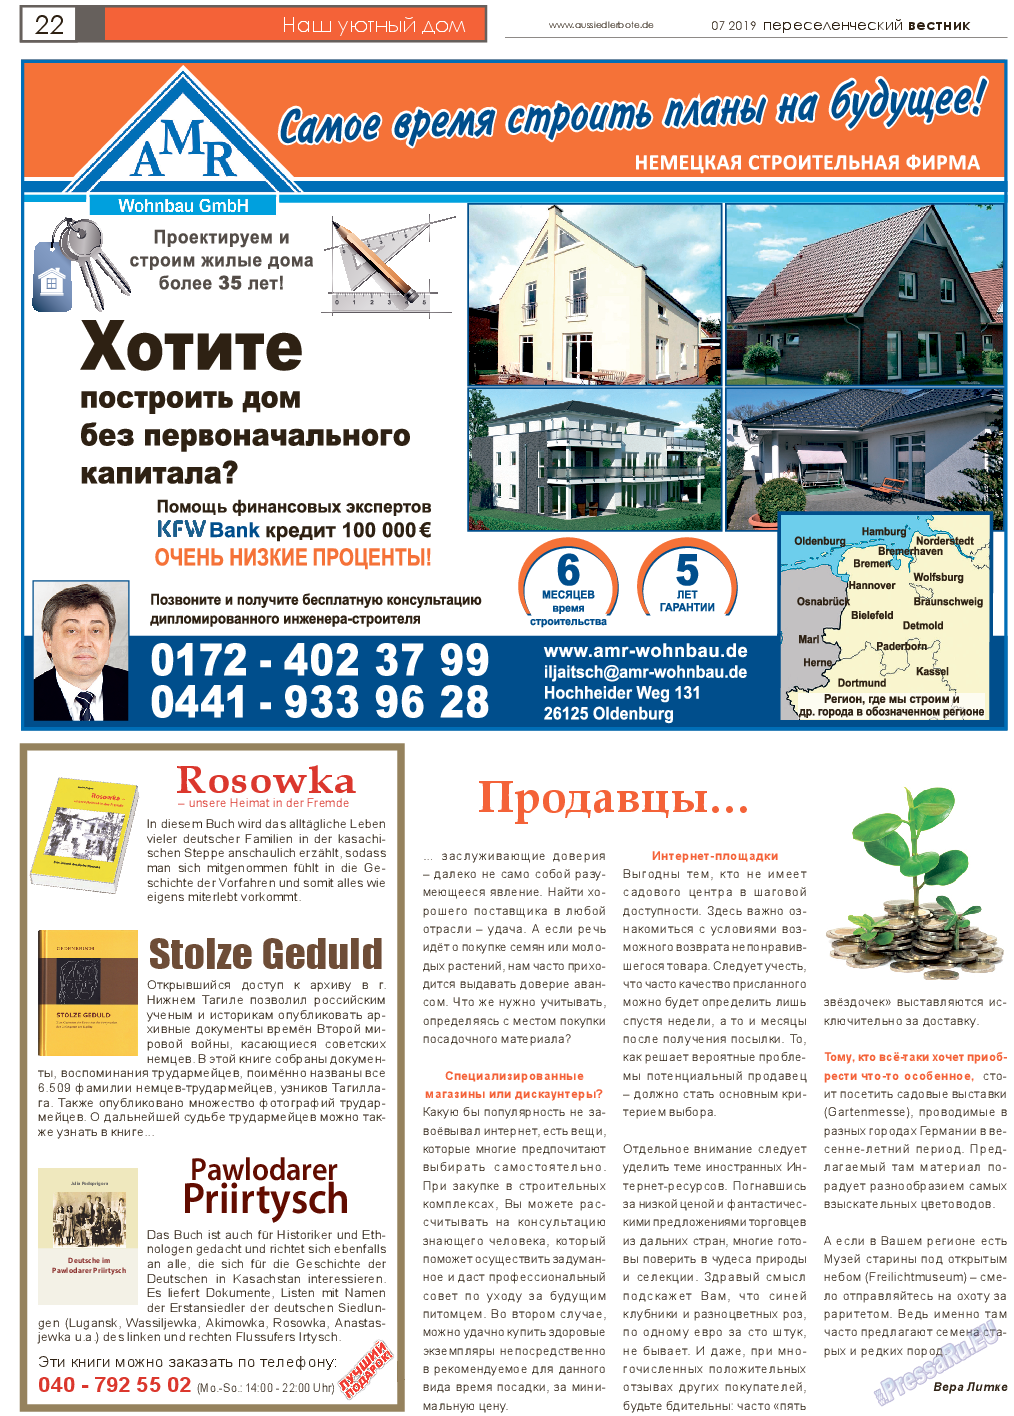 Переселенческий вестник (газета). 2019 год, номер 7, стр. 22